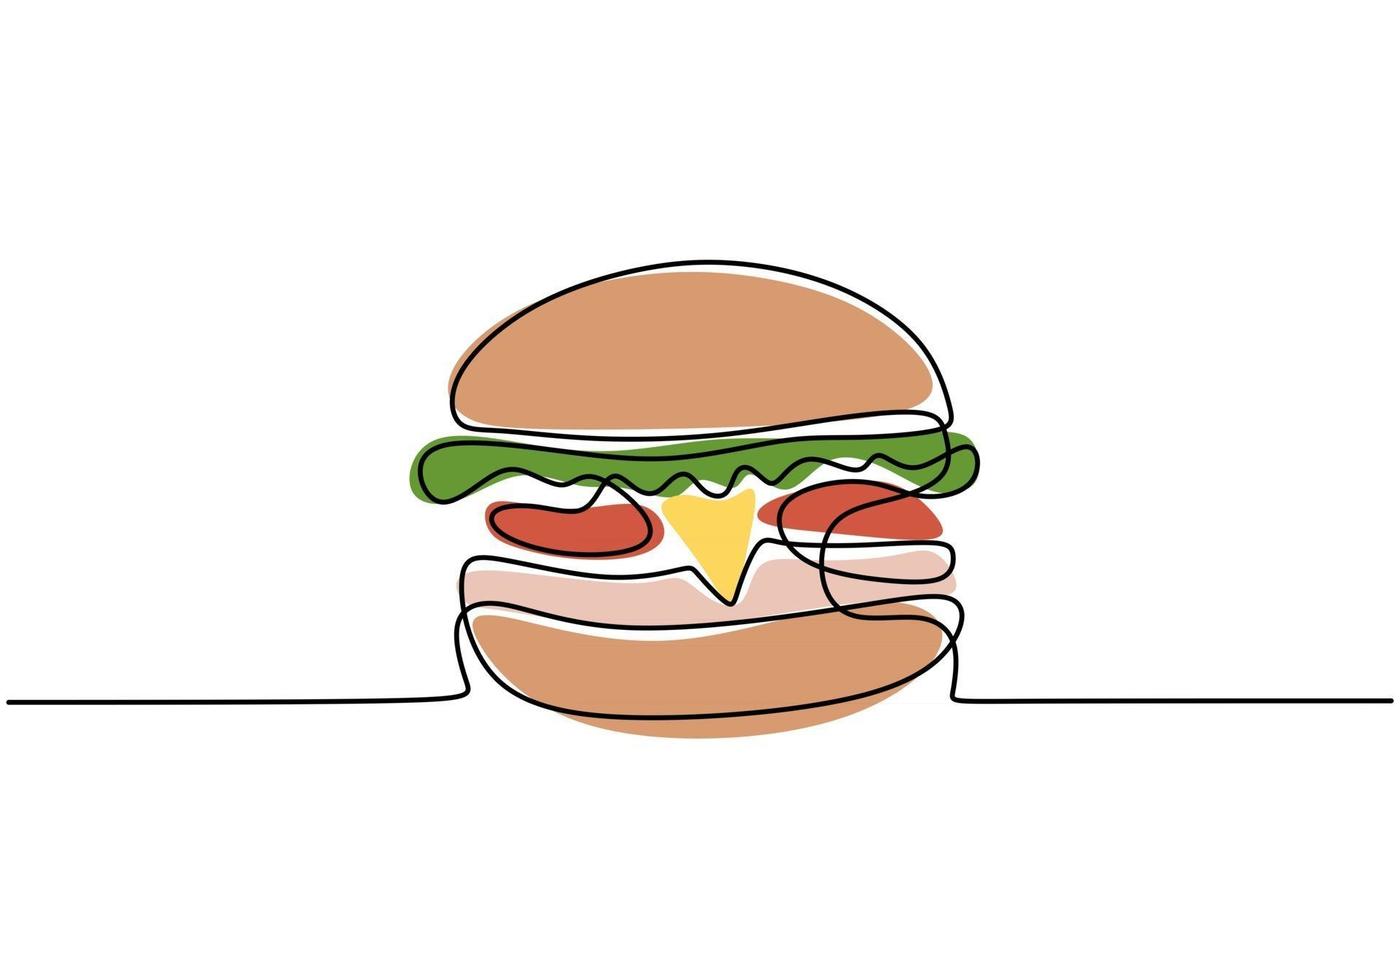 enkele ononderbroken lijn hamburger. grote hamburger fastfood in één lijnstijl geïsoleerd op een witte achtergrond. vector